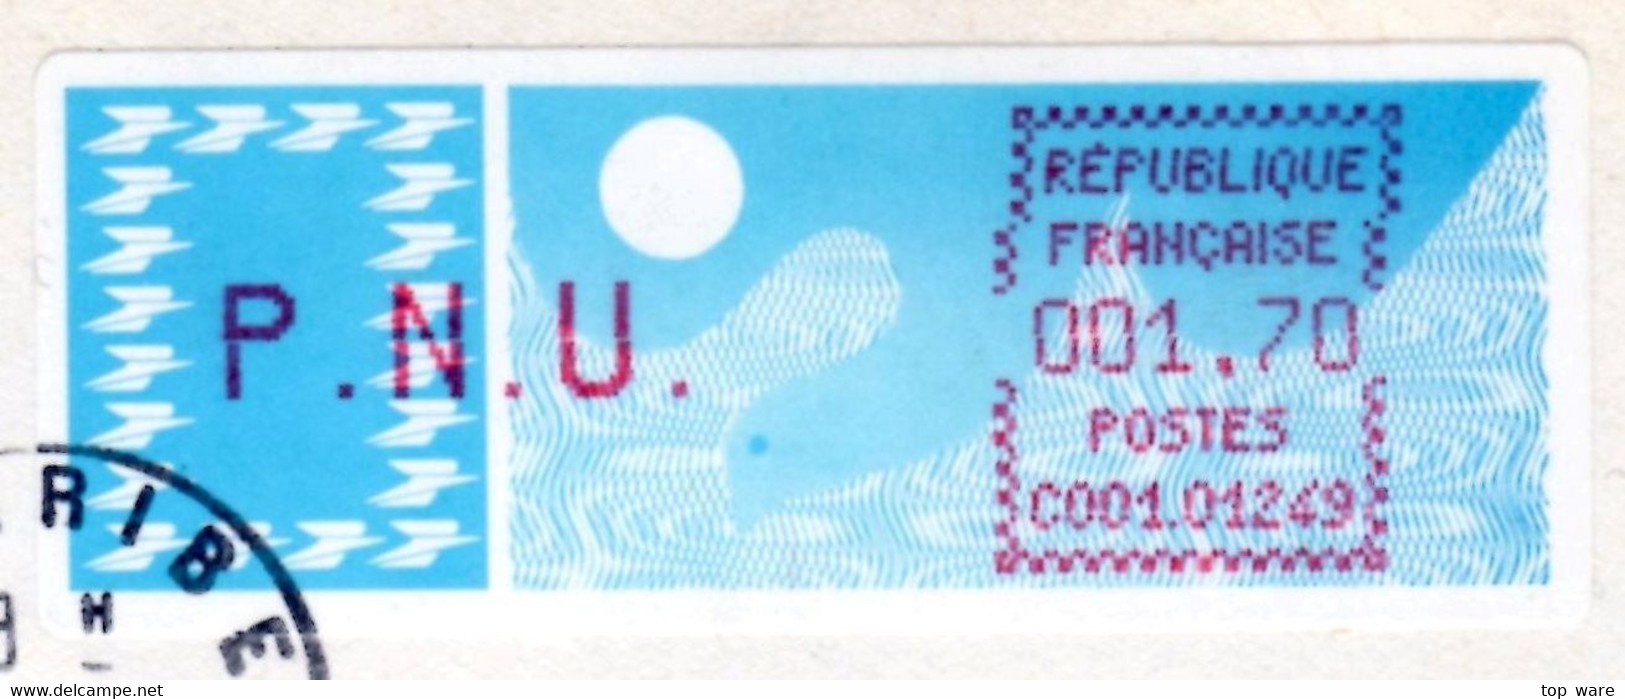 France LSA ATM Stamps C001.01249 / Michel 6.3 Zd / PNU 1,70 On Cover 2.4.1985 Miribel / Distributeurs Automatenmarken - 1985 « Carrier » Papier